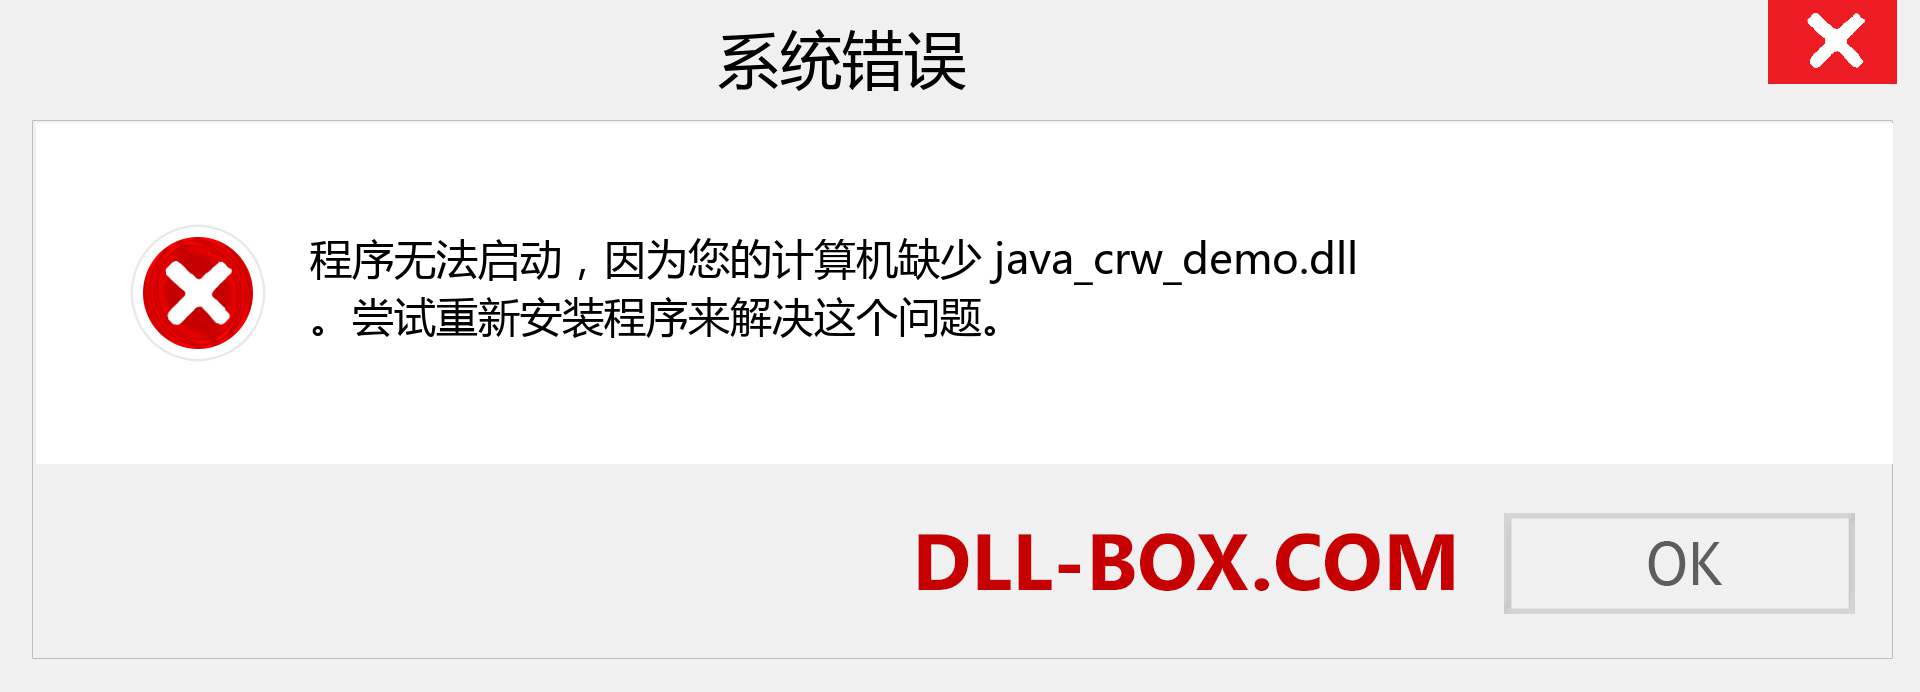 java_crw_demo.dll 文件丢失？。 适用于 Windows 7、8、10 的下载 - 修复 Windows、照片、图像上的 java_crw_demo dll 丢失错误